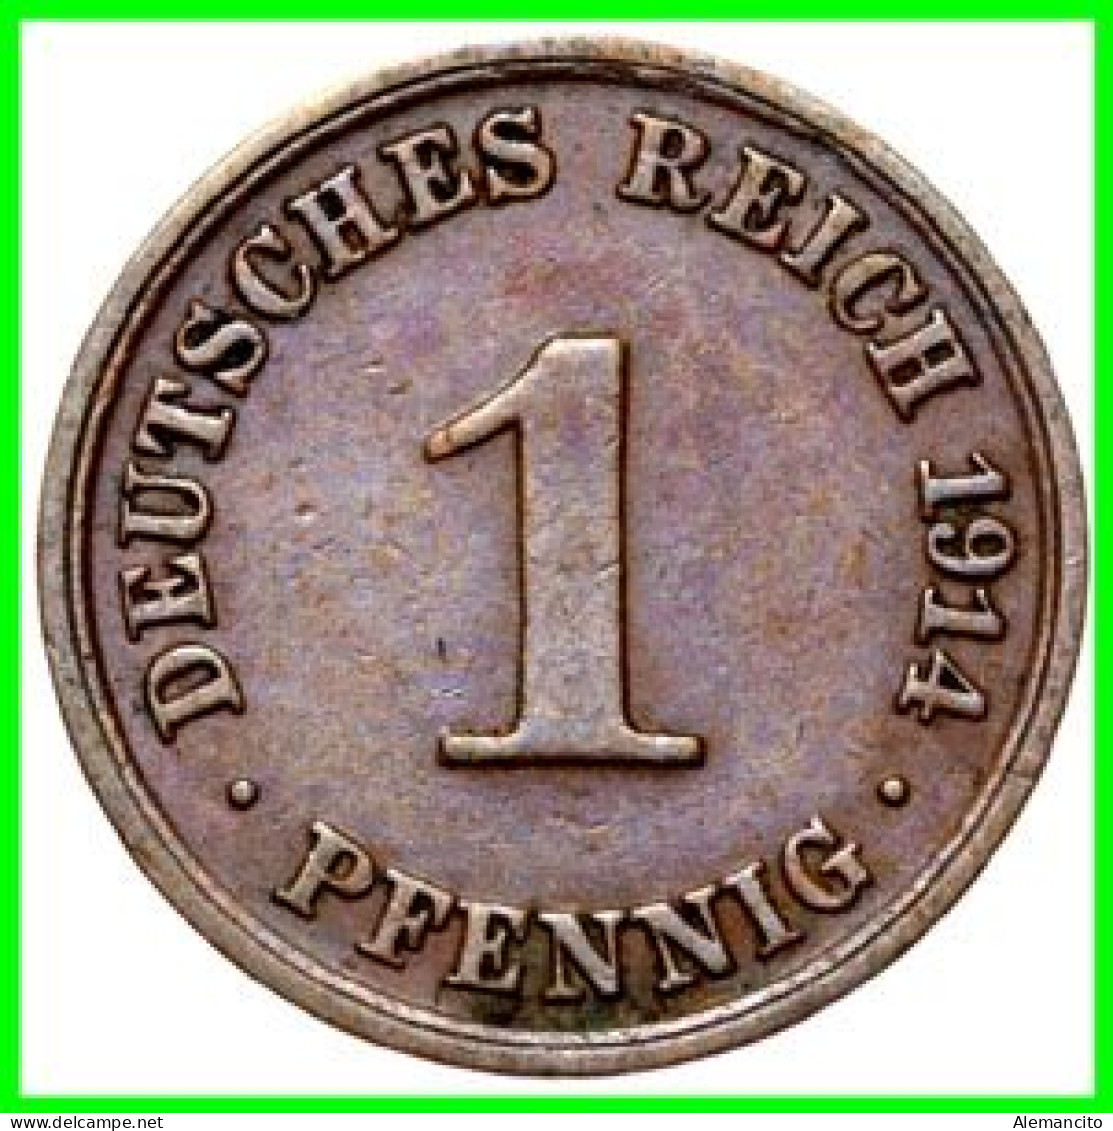 ALEMANIA – GERMANY - IMPERIO 4 MONEDAS DE SERIE COBRE DIAMETRO 17.5 Mm. DEL AÑO 1914 – KM-10   WILHELM II - 1 Pfennig